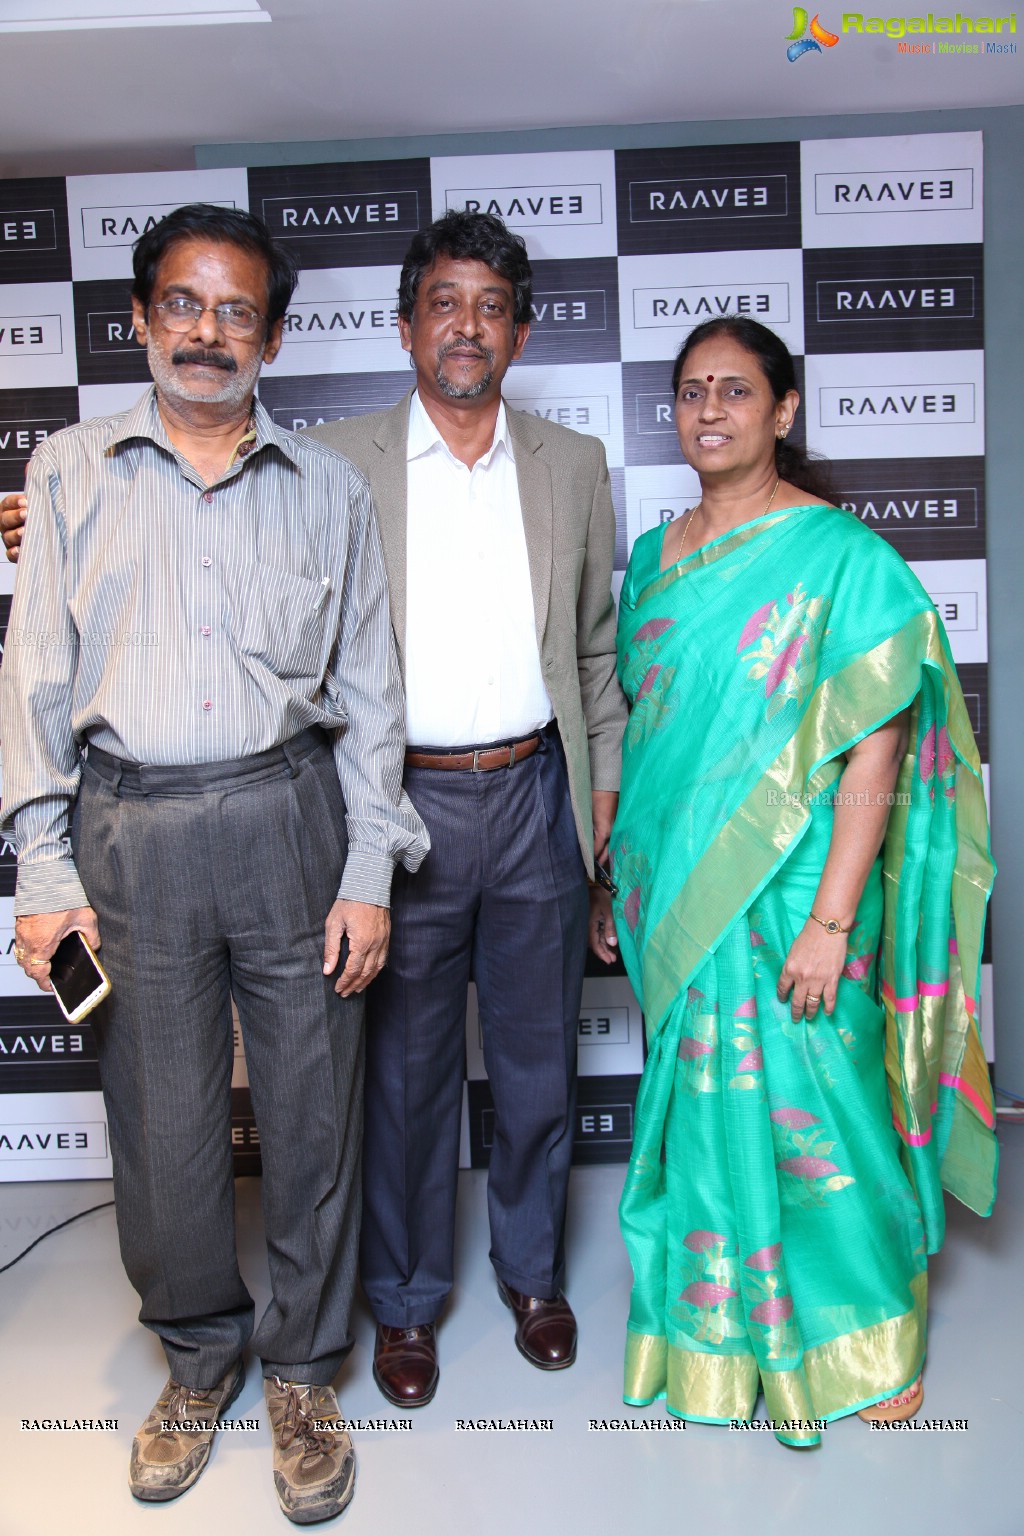 Grand Launch of Raavee at Labbipet, Vijayawada